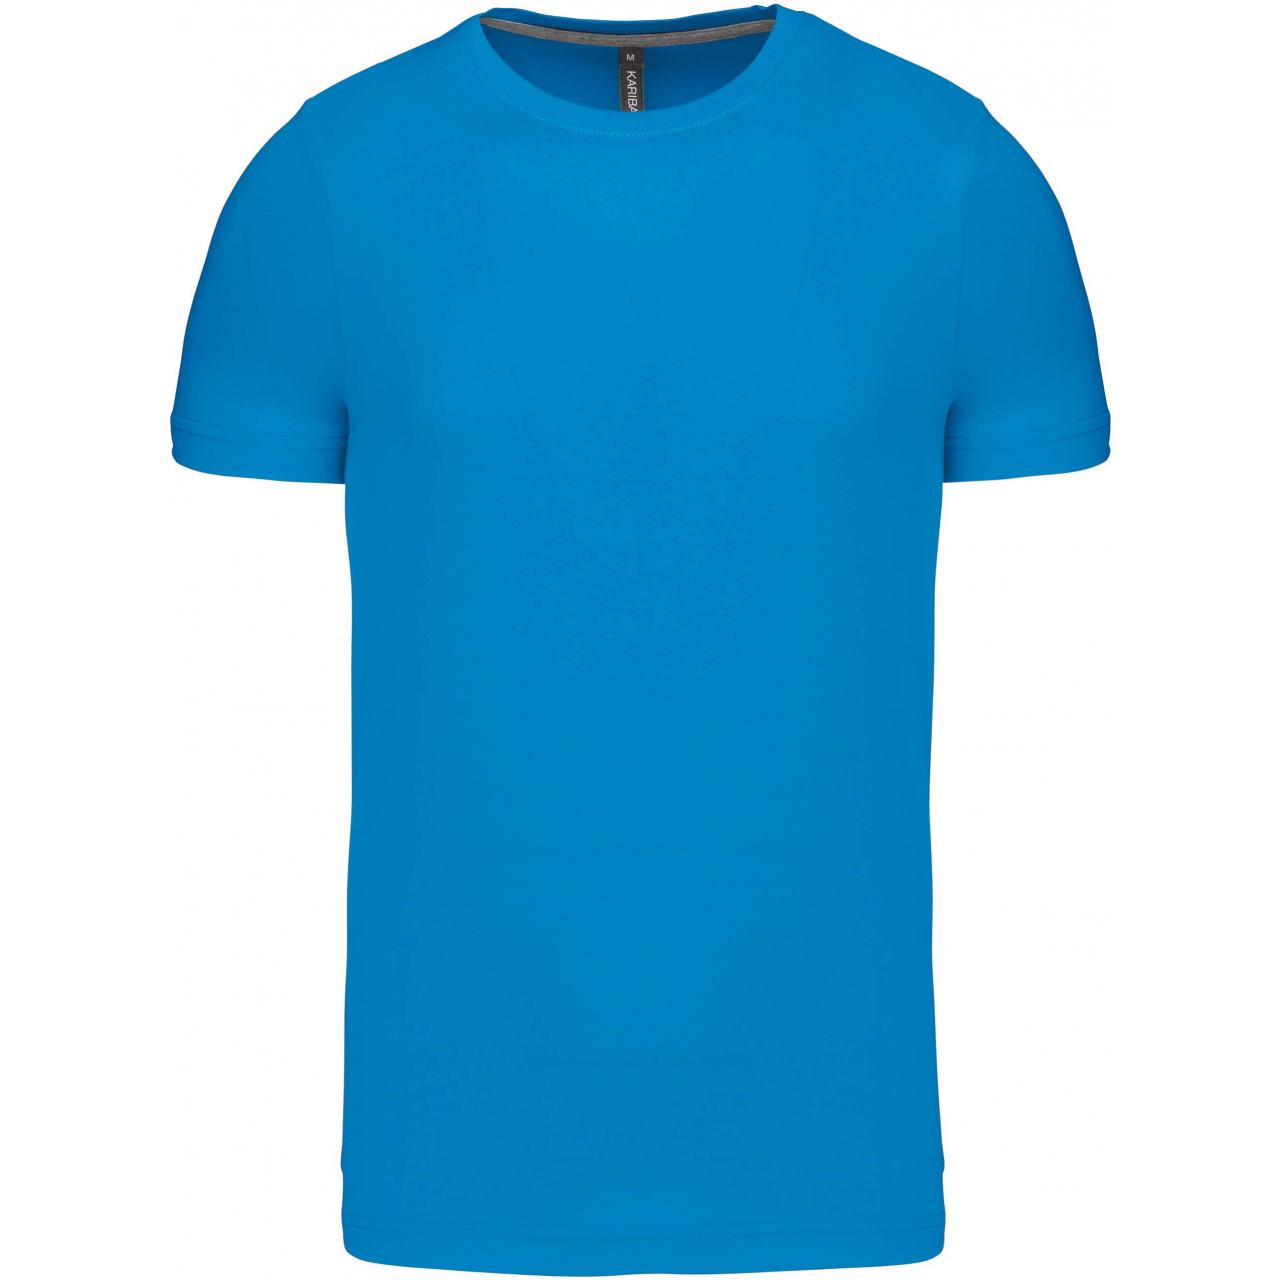 Pánské tričko Kariban krátký rukáv - středně modré, L